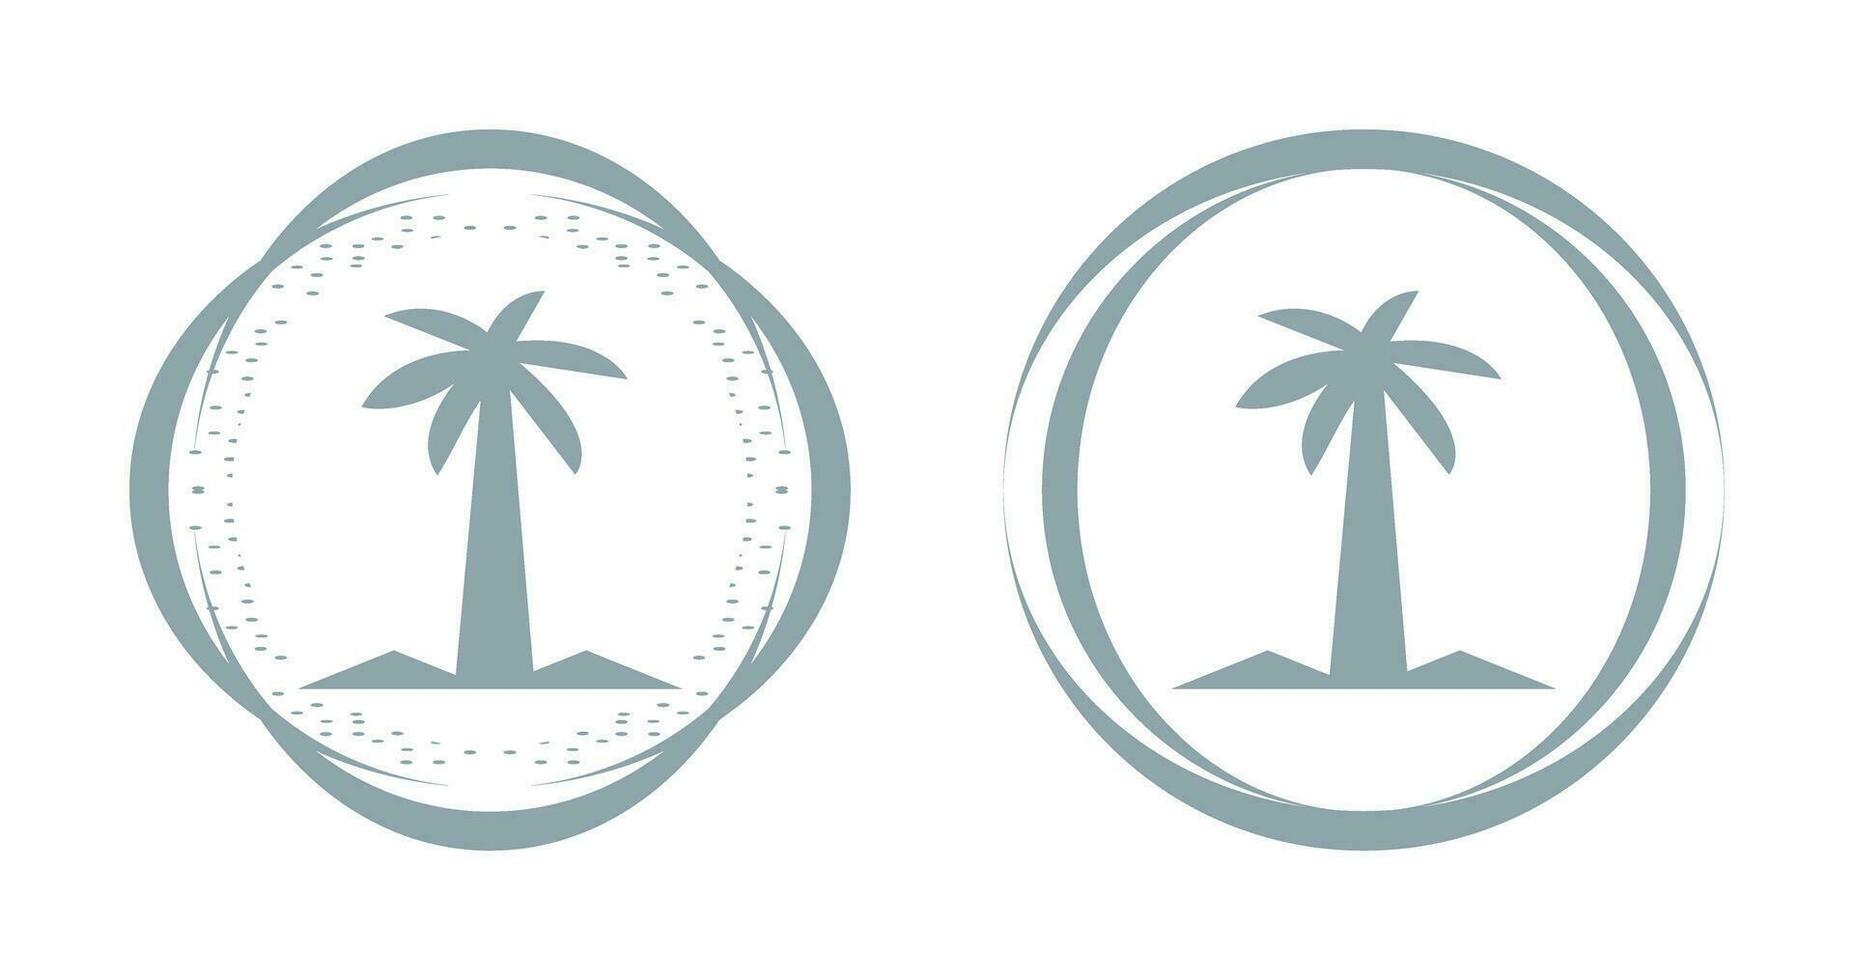 kokospalm vector icon